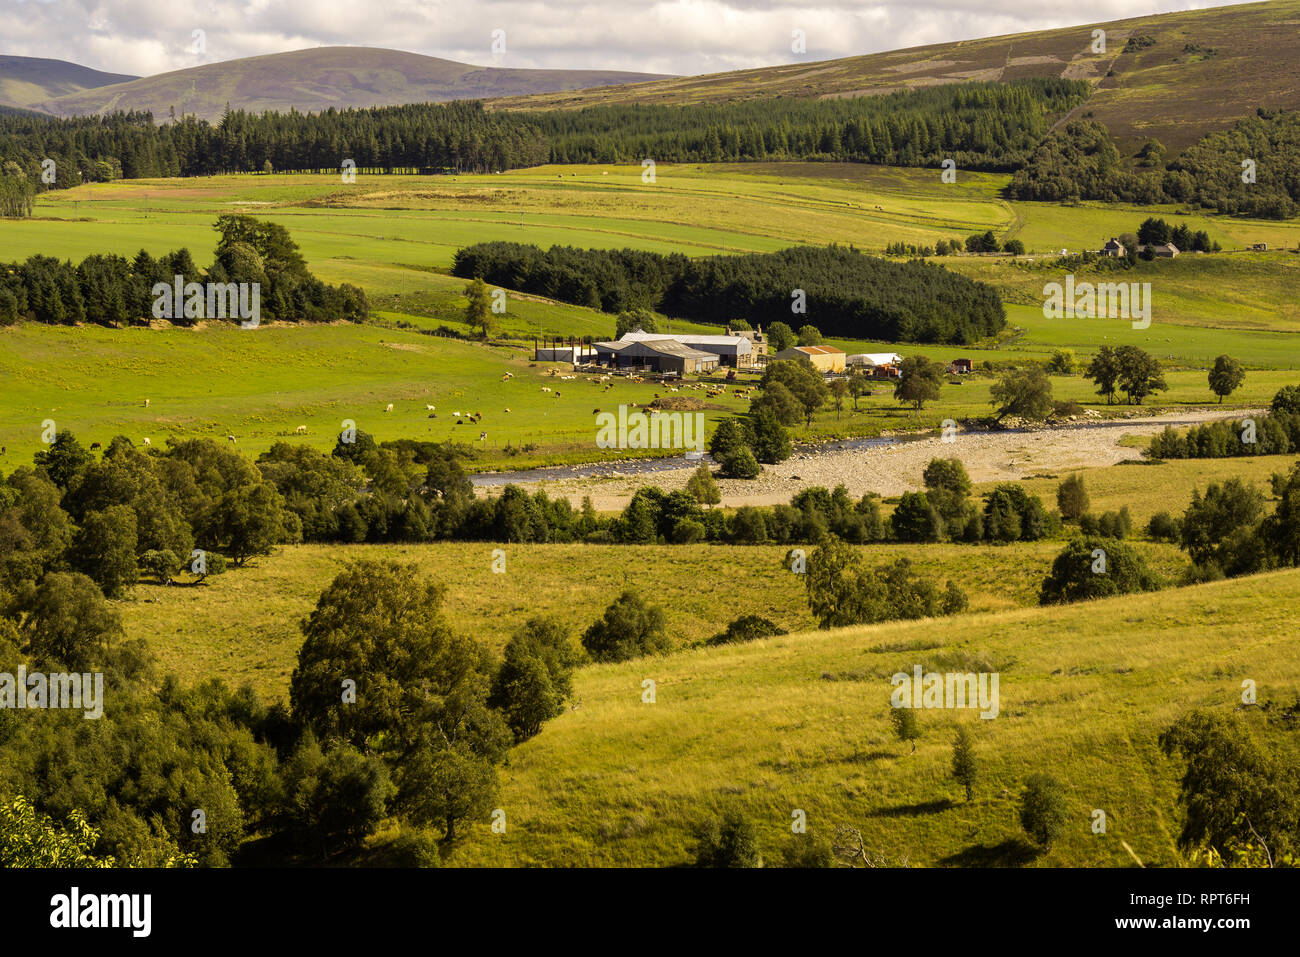 Typische, ländliche Landschaft mit Bauernhöfen, Weiden, Vieh Highlands Schottland Stockfoto